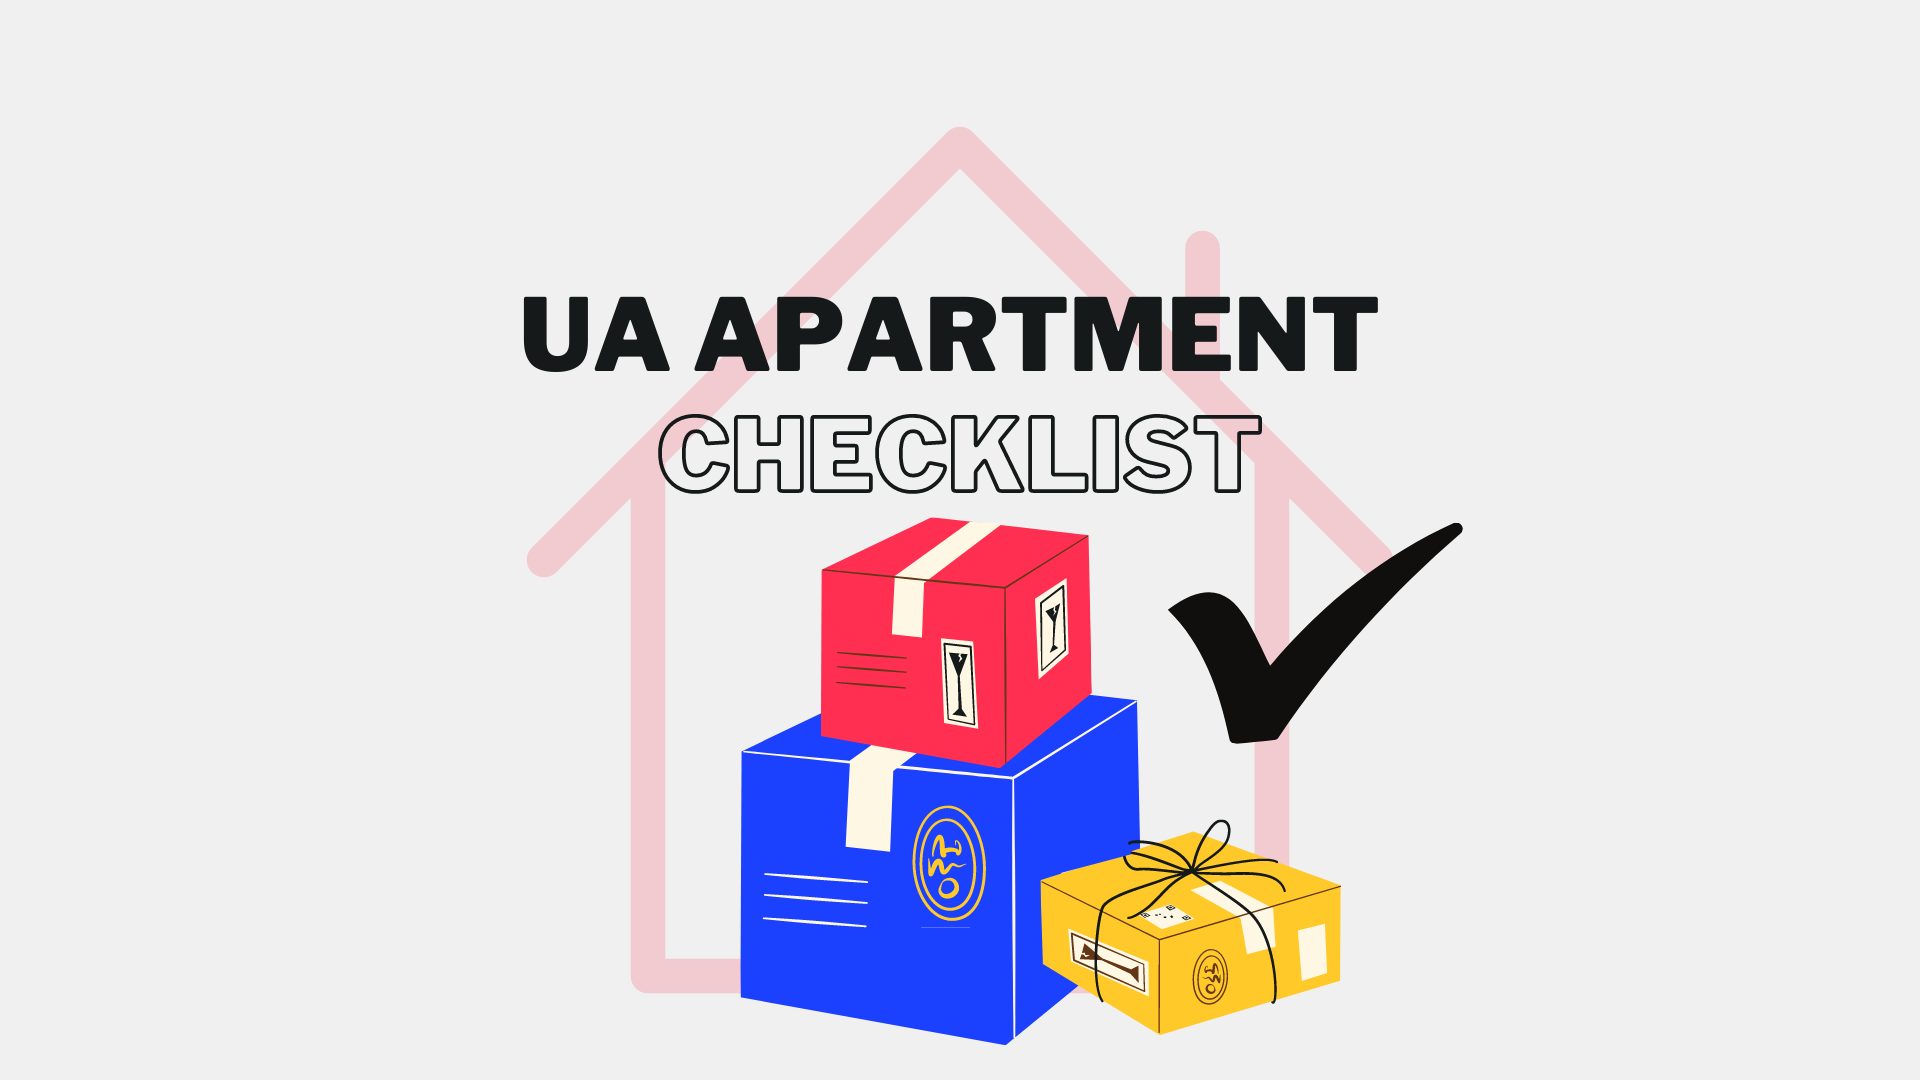 UA Apartment Checklist